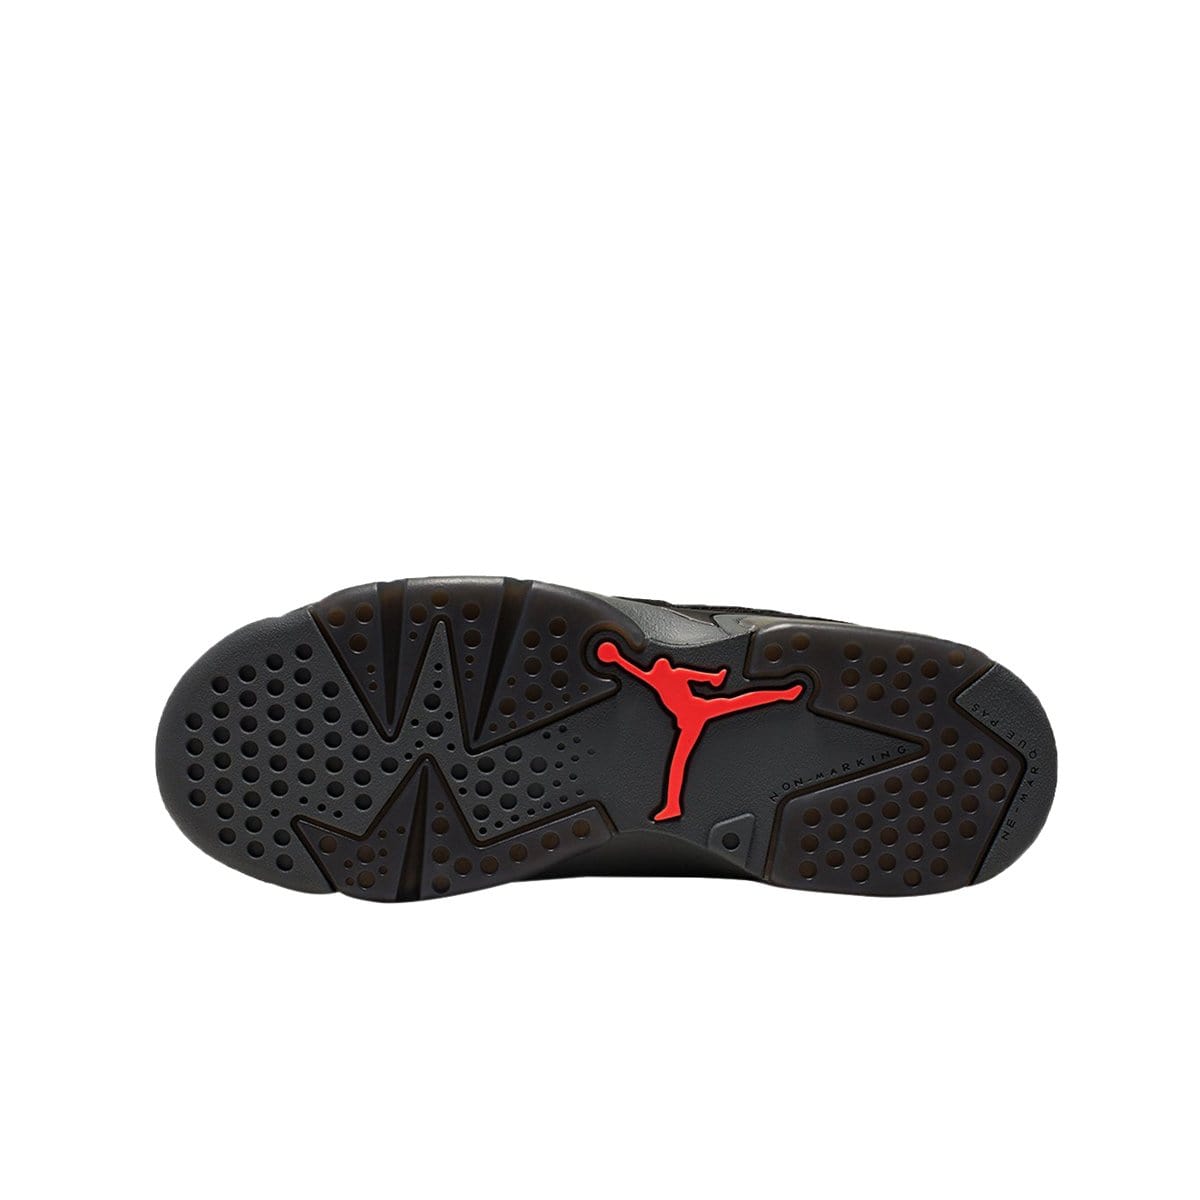 Air Jordan Shoes x Paris Saint-Germain AIR JORDAN 6 RETRO (GRADE SCHOOL)